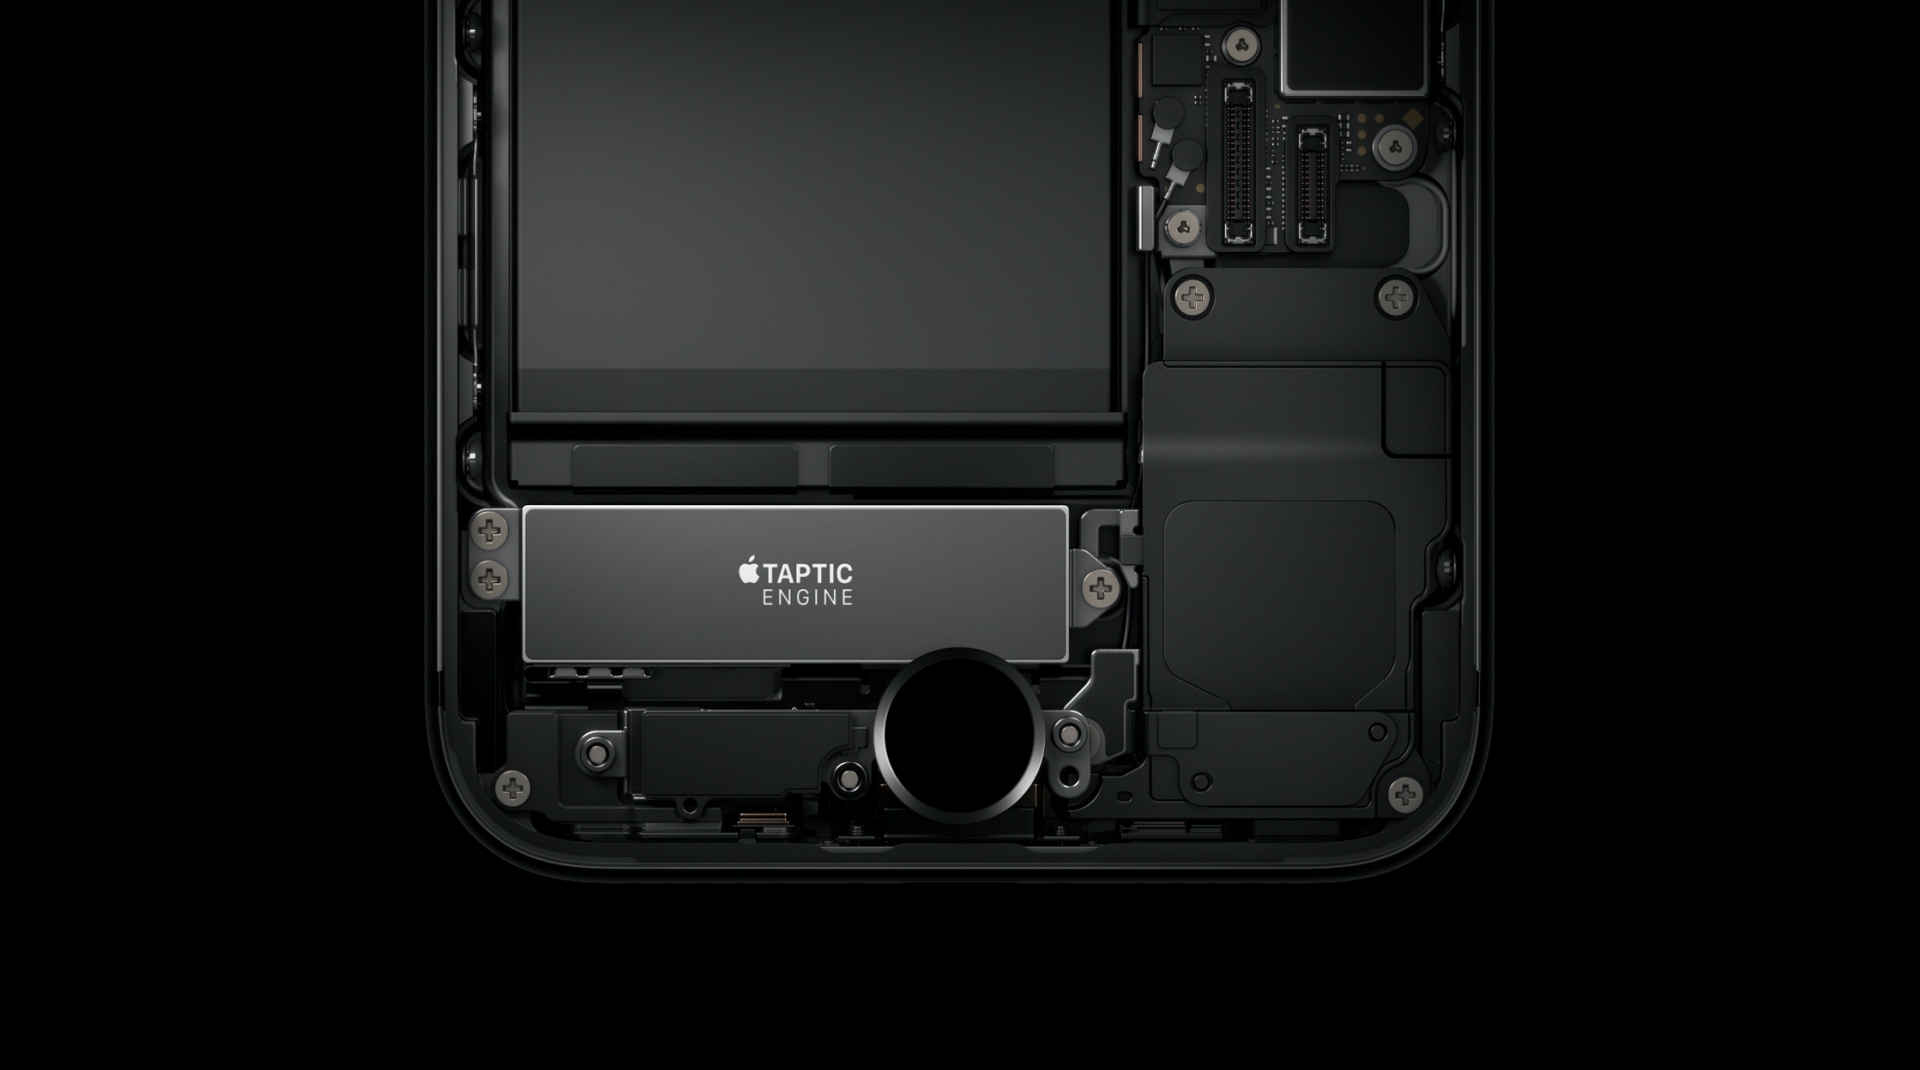 ของใหม่ทำพิษ พบ iPhone 7 ปุ่มโฮมไม่สามารถใช้งานได้ ต้องส่งศูนย์เท่านั้น